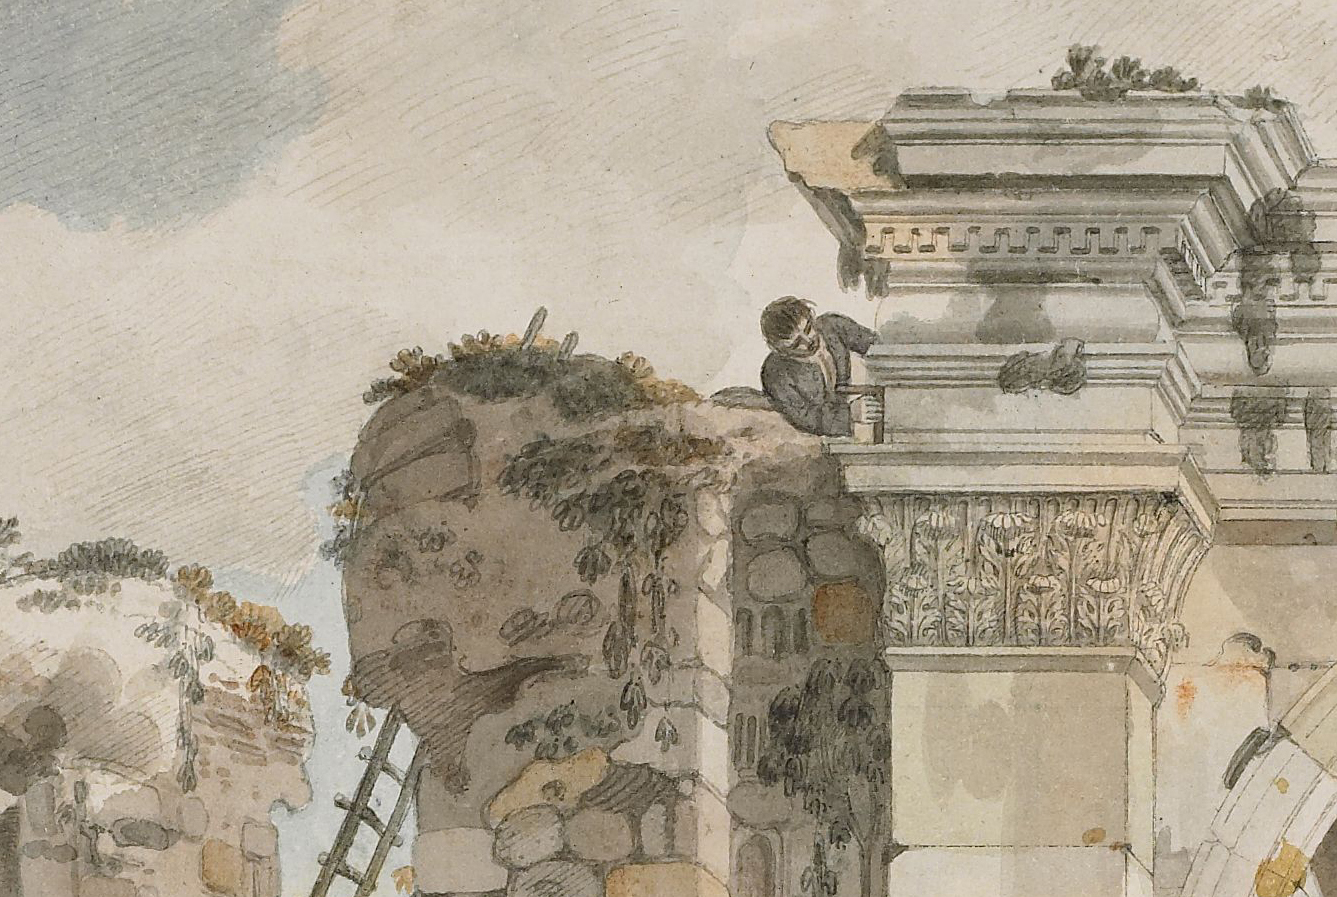 A watercolour of a man high up measuring a ruin